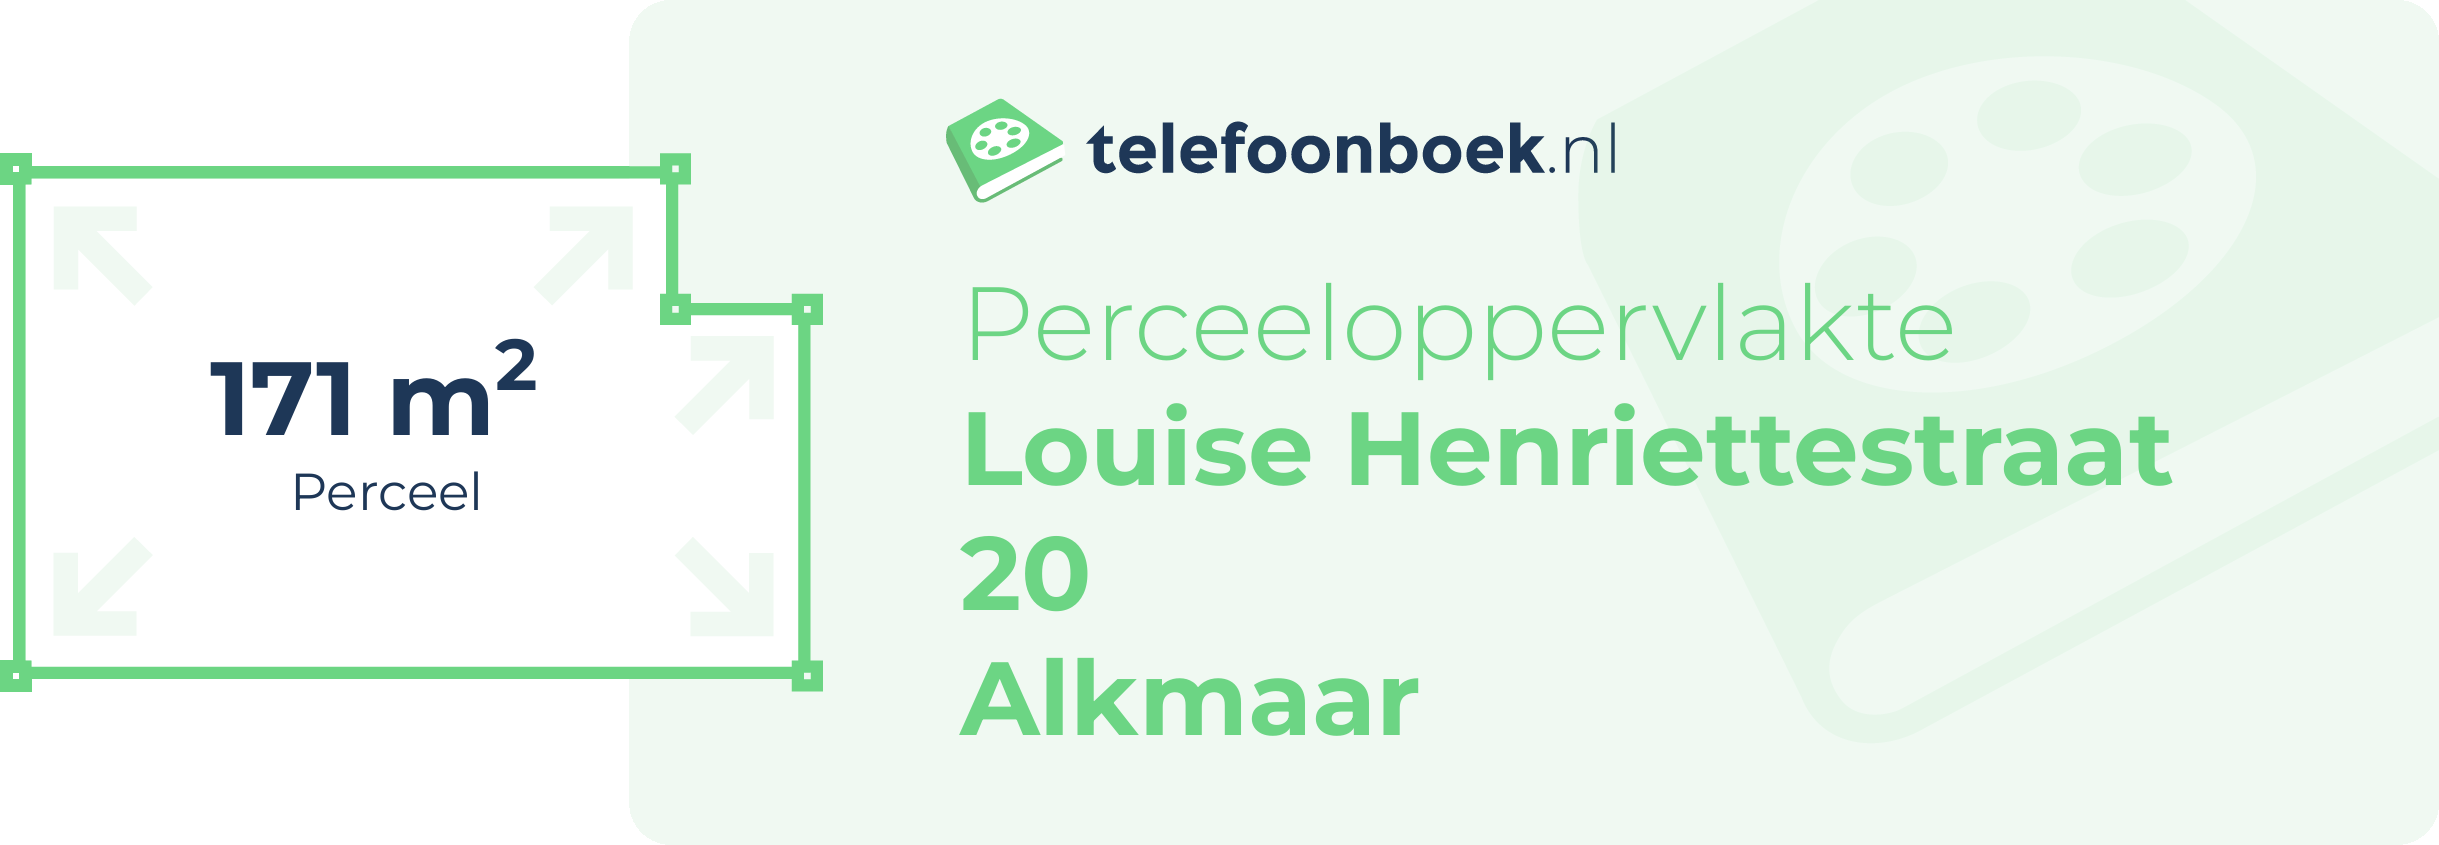 Perceeloppervlakte Louise Henriettestraat 20 Alkmaar